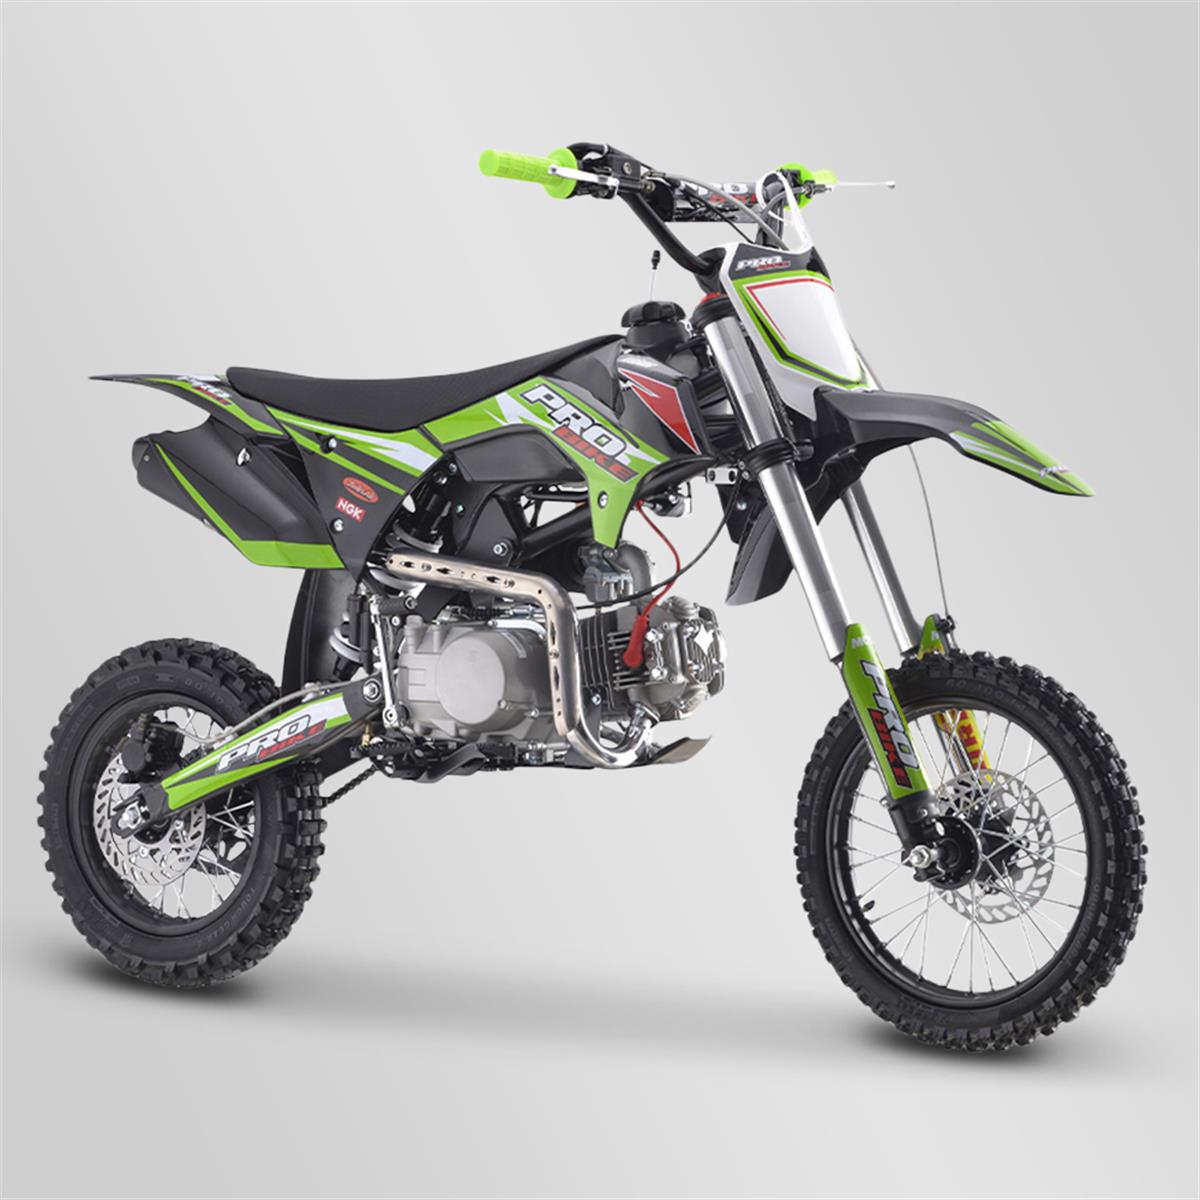 Dirt Bike, Pit Bike Probike 140cc 12/14 2021 | Smallmx - Dirt bike, Pit  bike, Quads, Minimoto